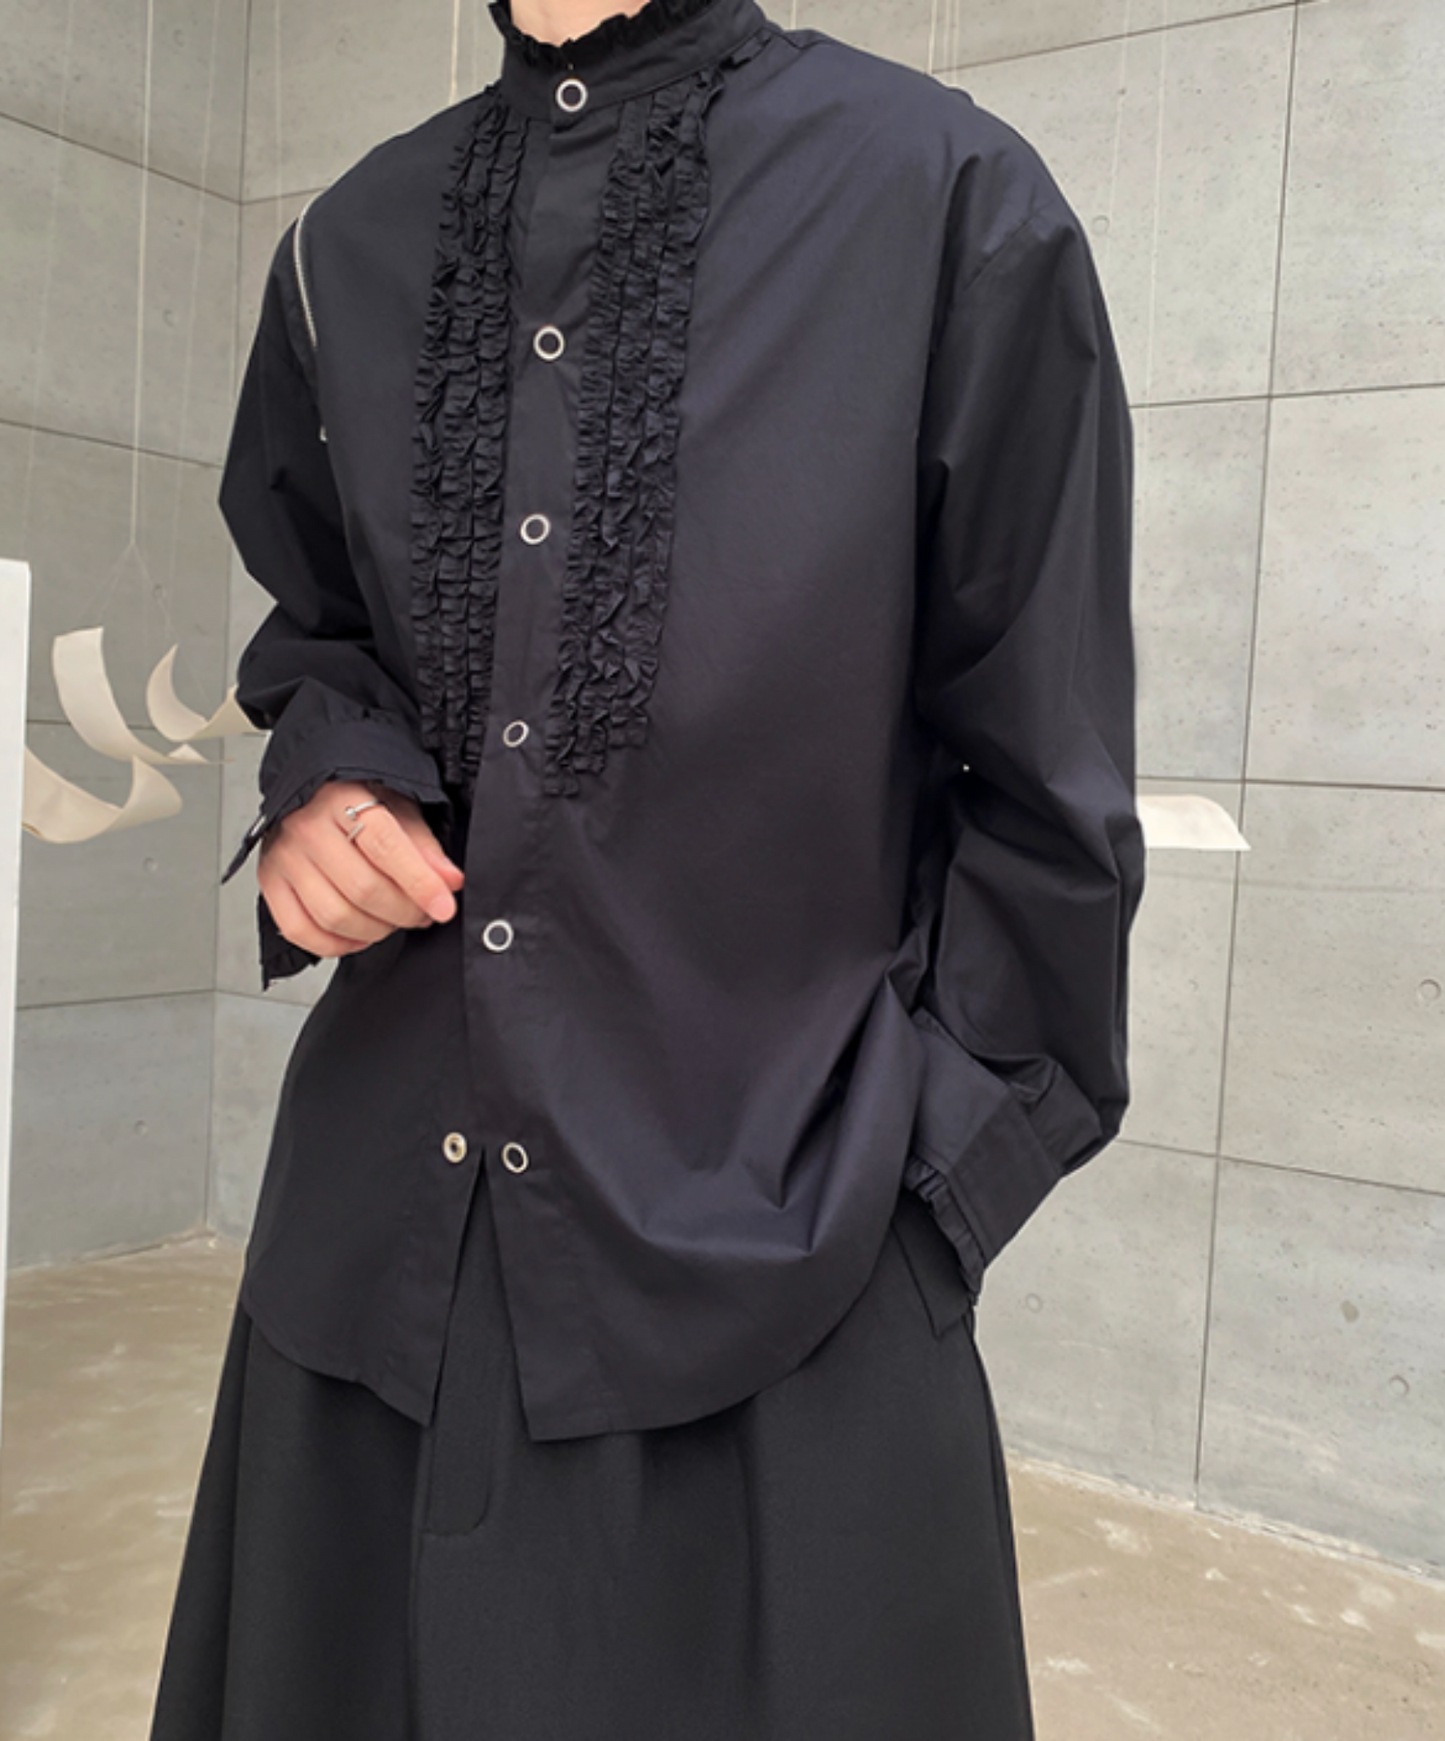 【style14】dark mode outfit set EN895（shirt + skirt set）